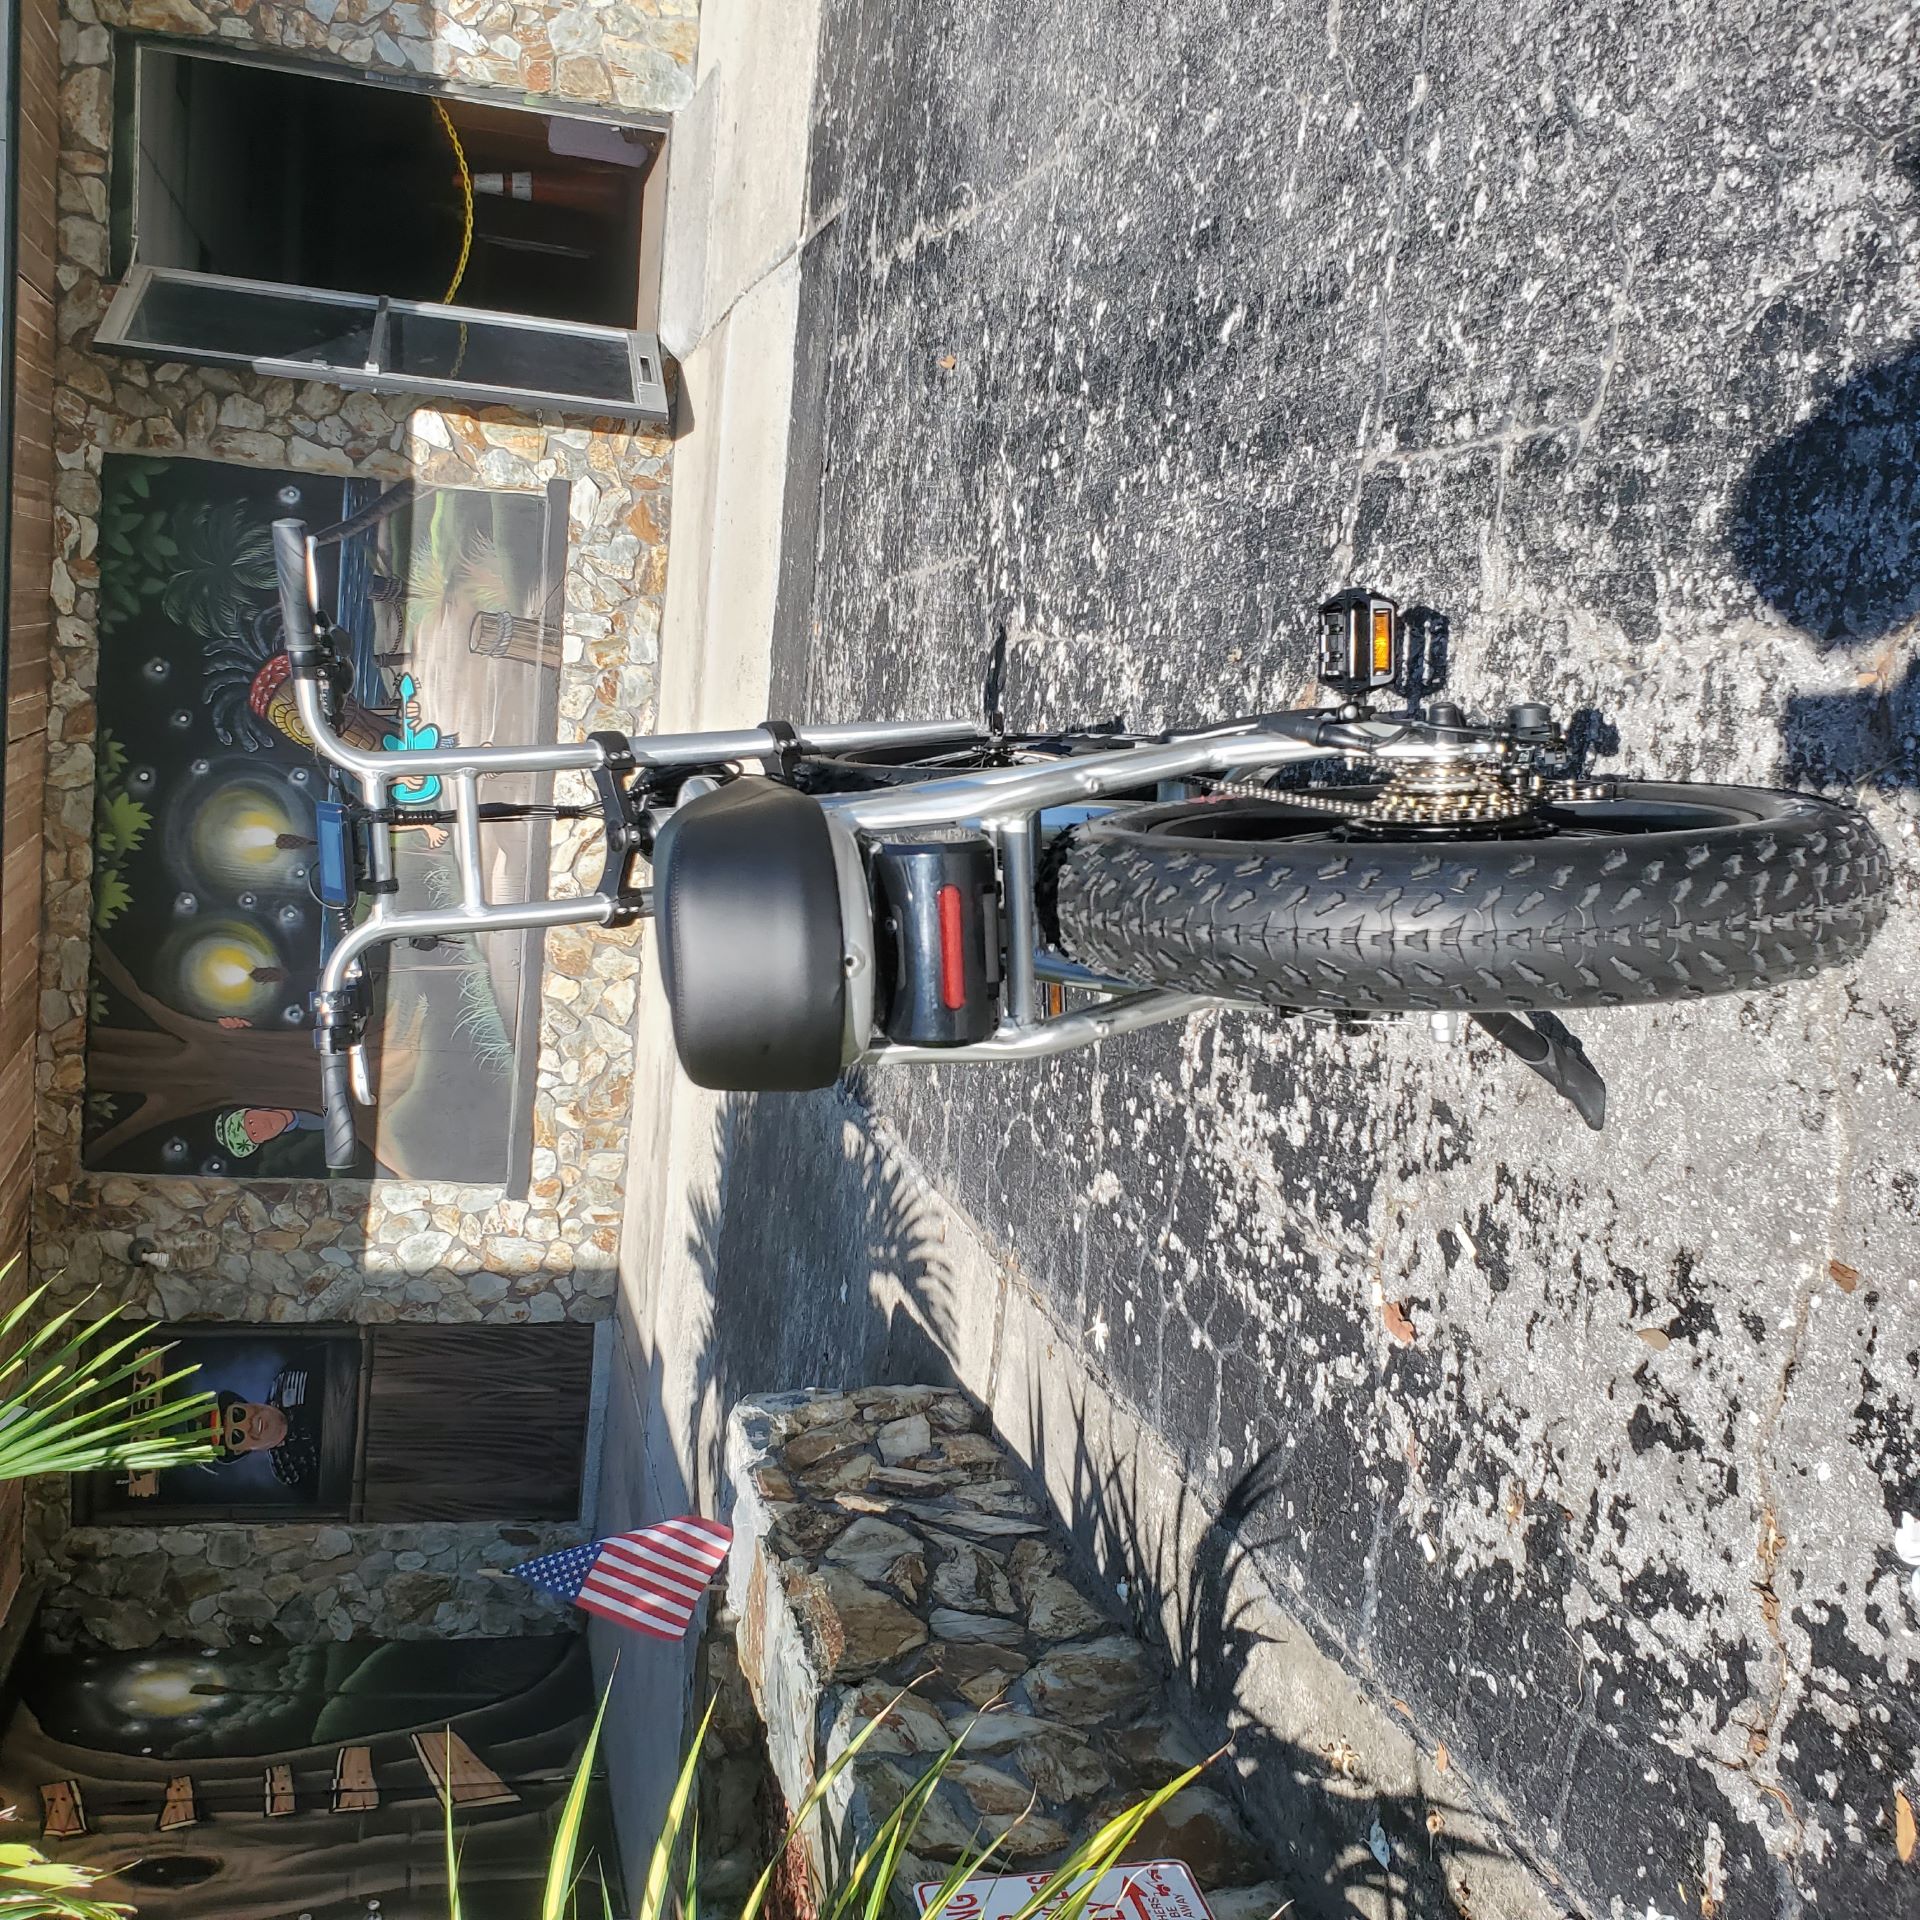 2022 Scootstar Rockstar 750 Watt in Largo, Florida - Photo 7